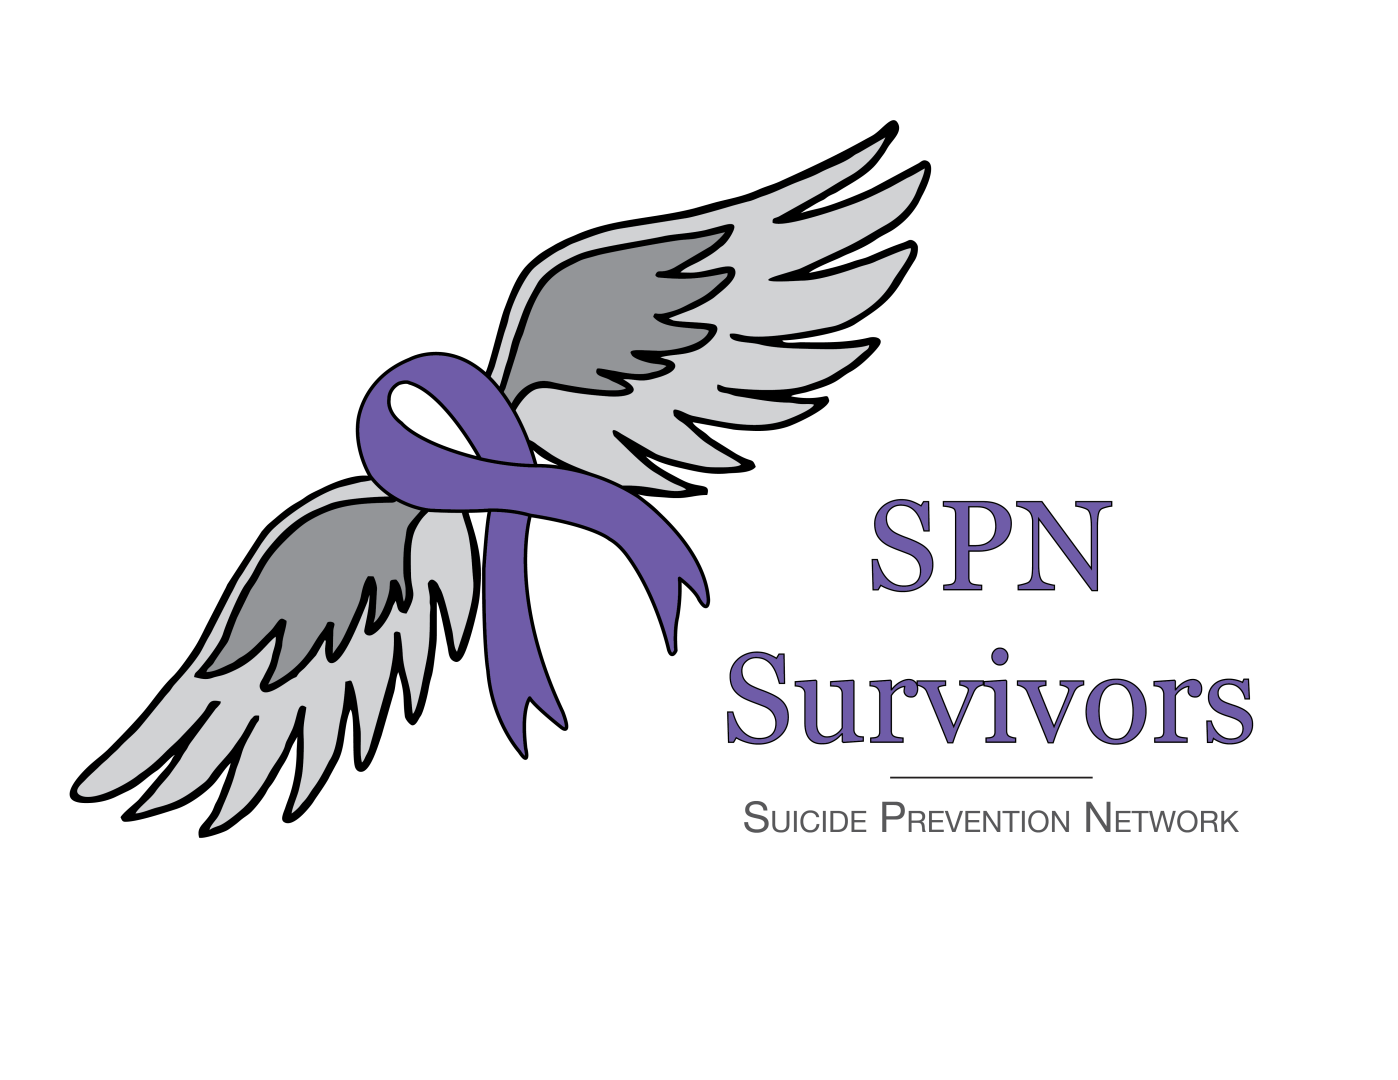 SPN Survivors logo